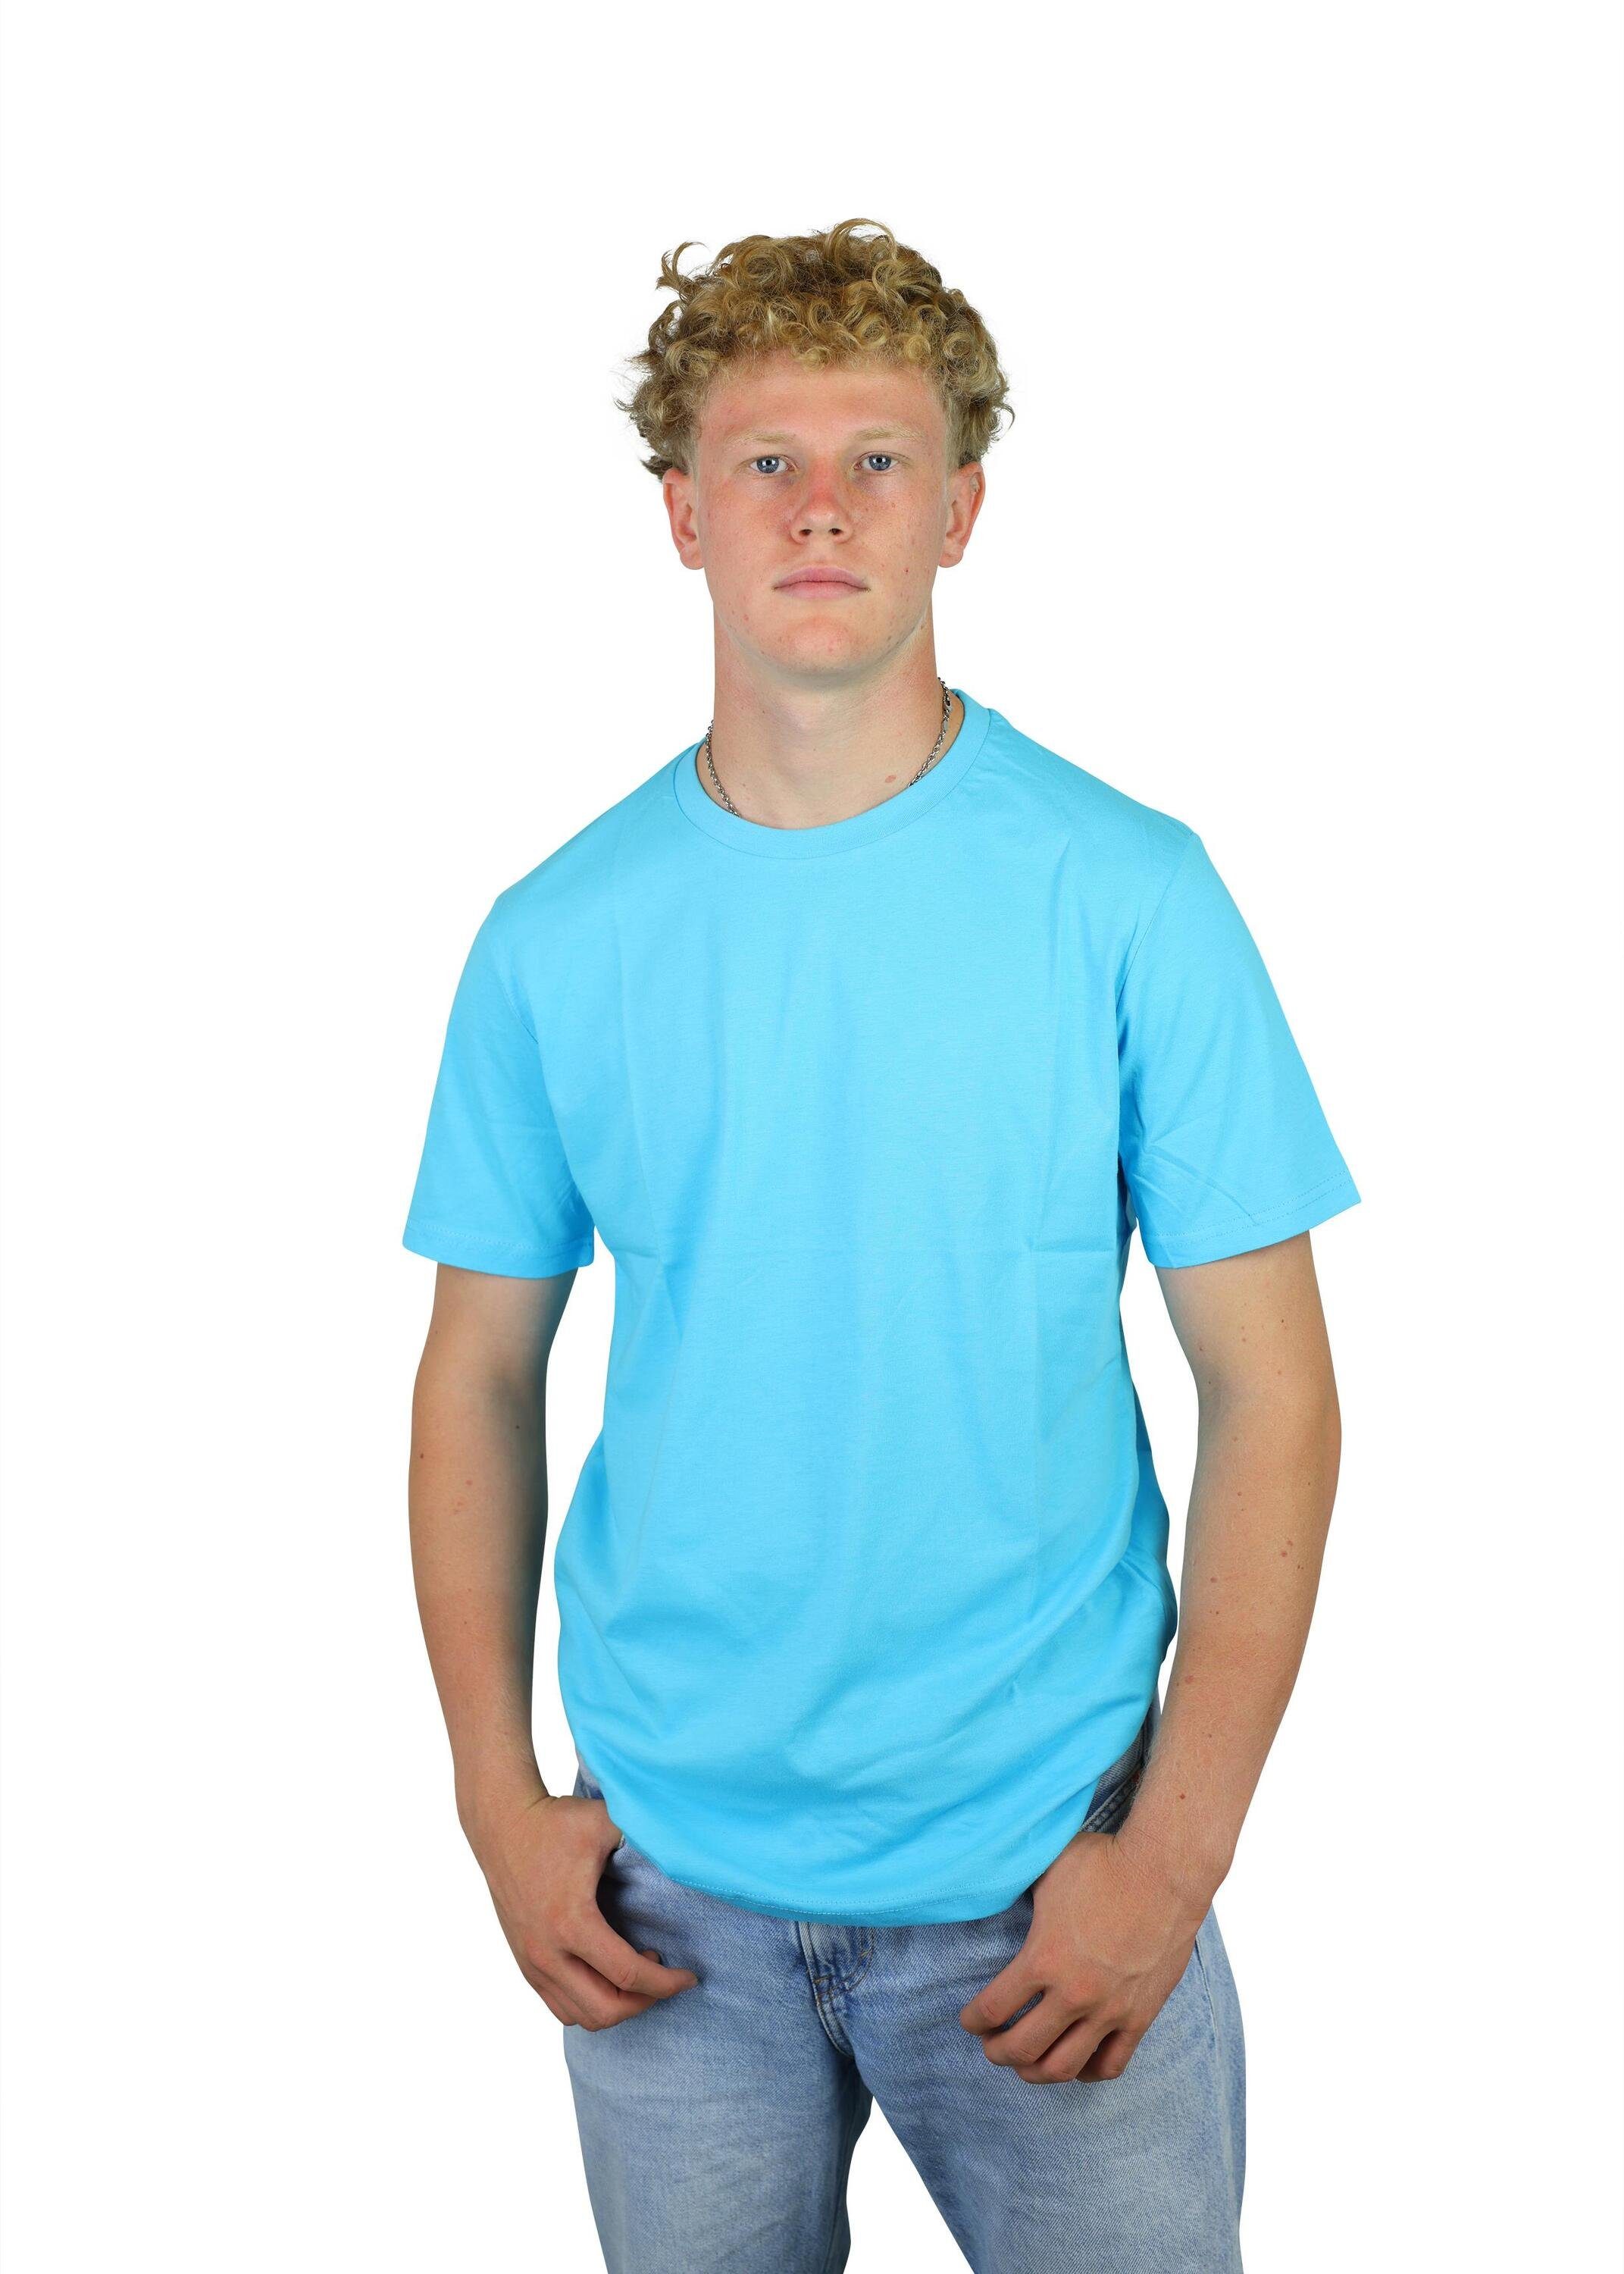 Kinder, Jugend Karl Baumwolle, für T-Shirt aus FuPer Fußball, Blue